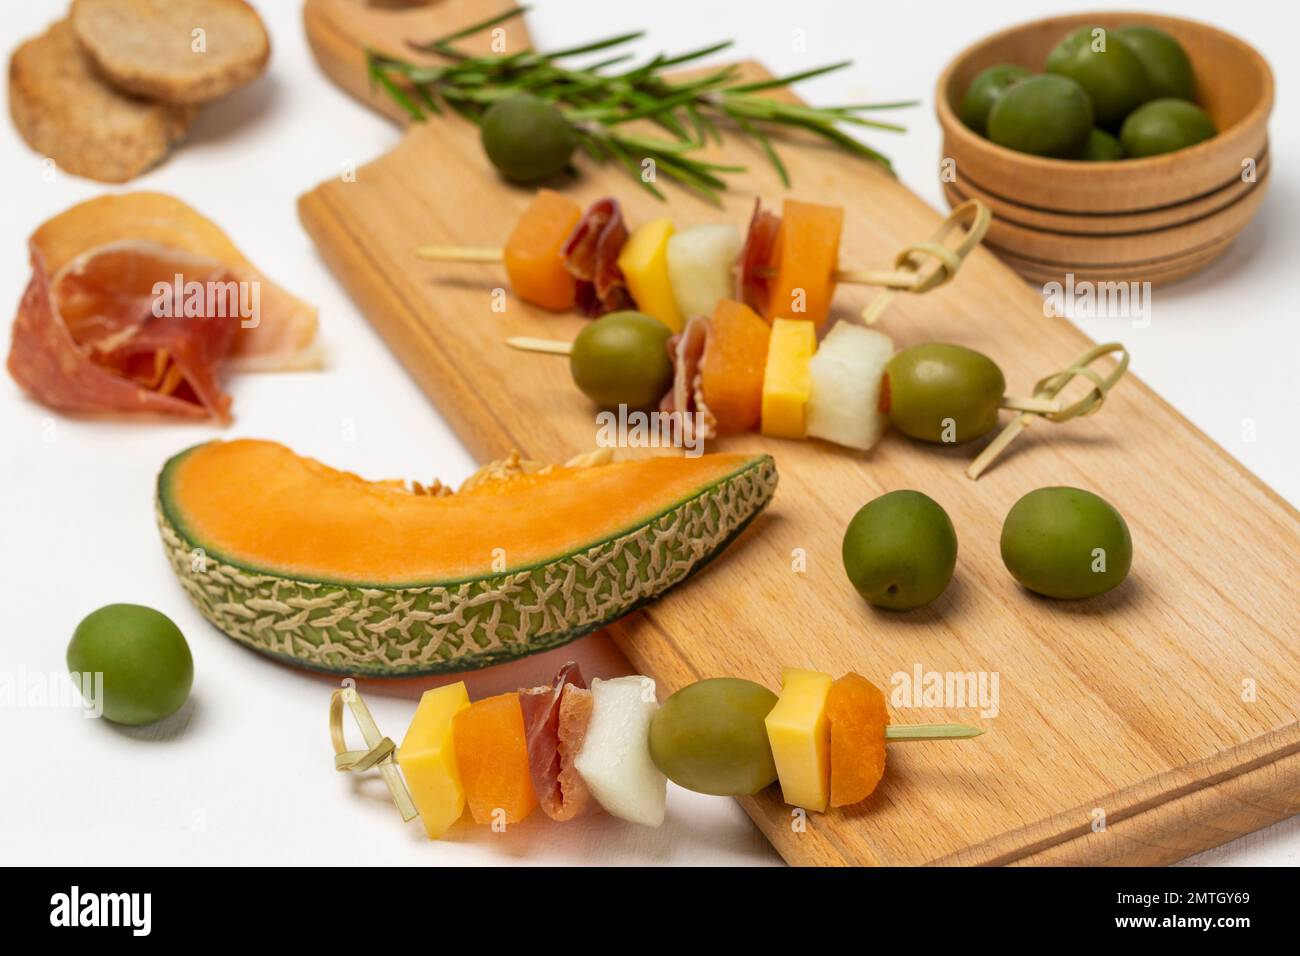 Ein Stück Melone. Käse, Oliven, Jamon auf einem Spieß. Grüne Oliven in einer Holzschüssel. Draufsicht. Weißer Hintergrund. Stockfoto